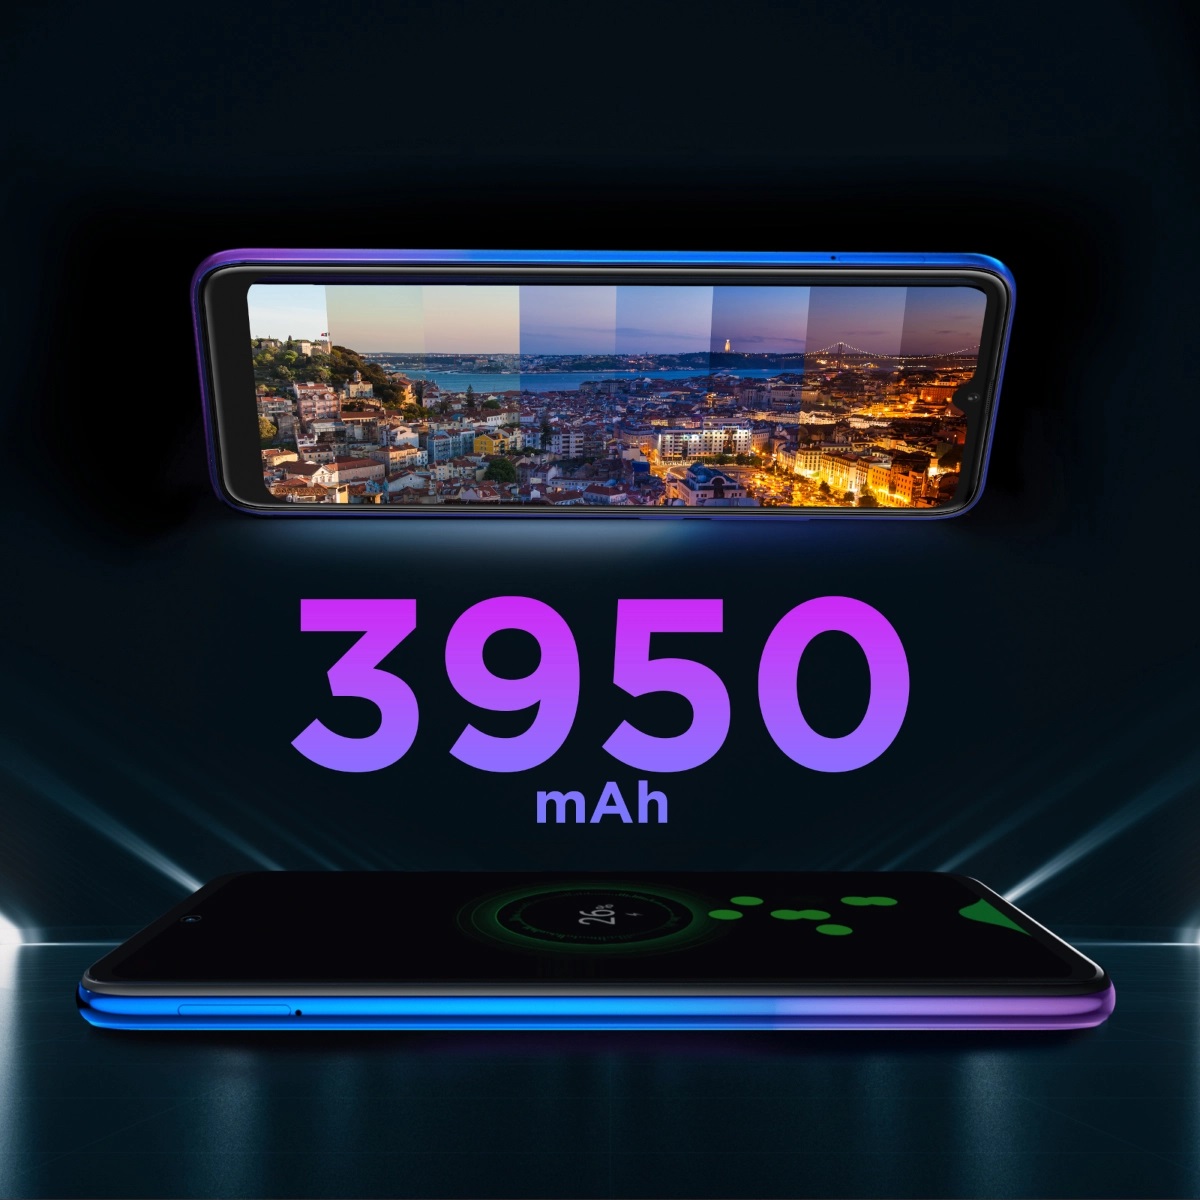 Gün boyu yanınızda   P13 Blue Max Pro Lite 2022, 3950 mAh’lik batarya kapasitesi ile gün boyu.